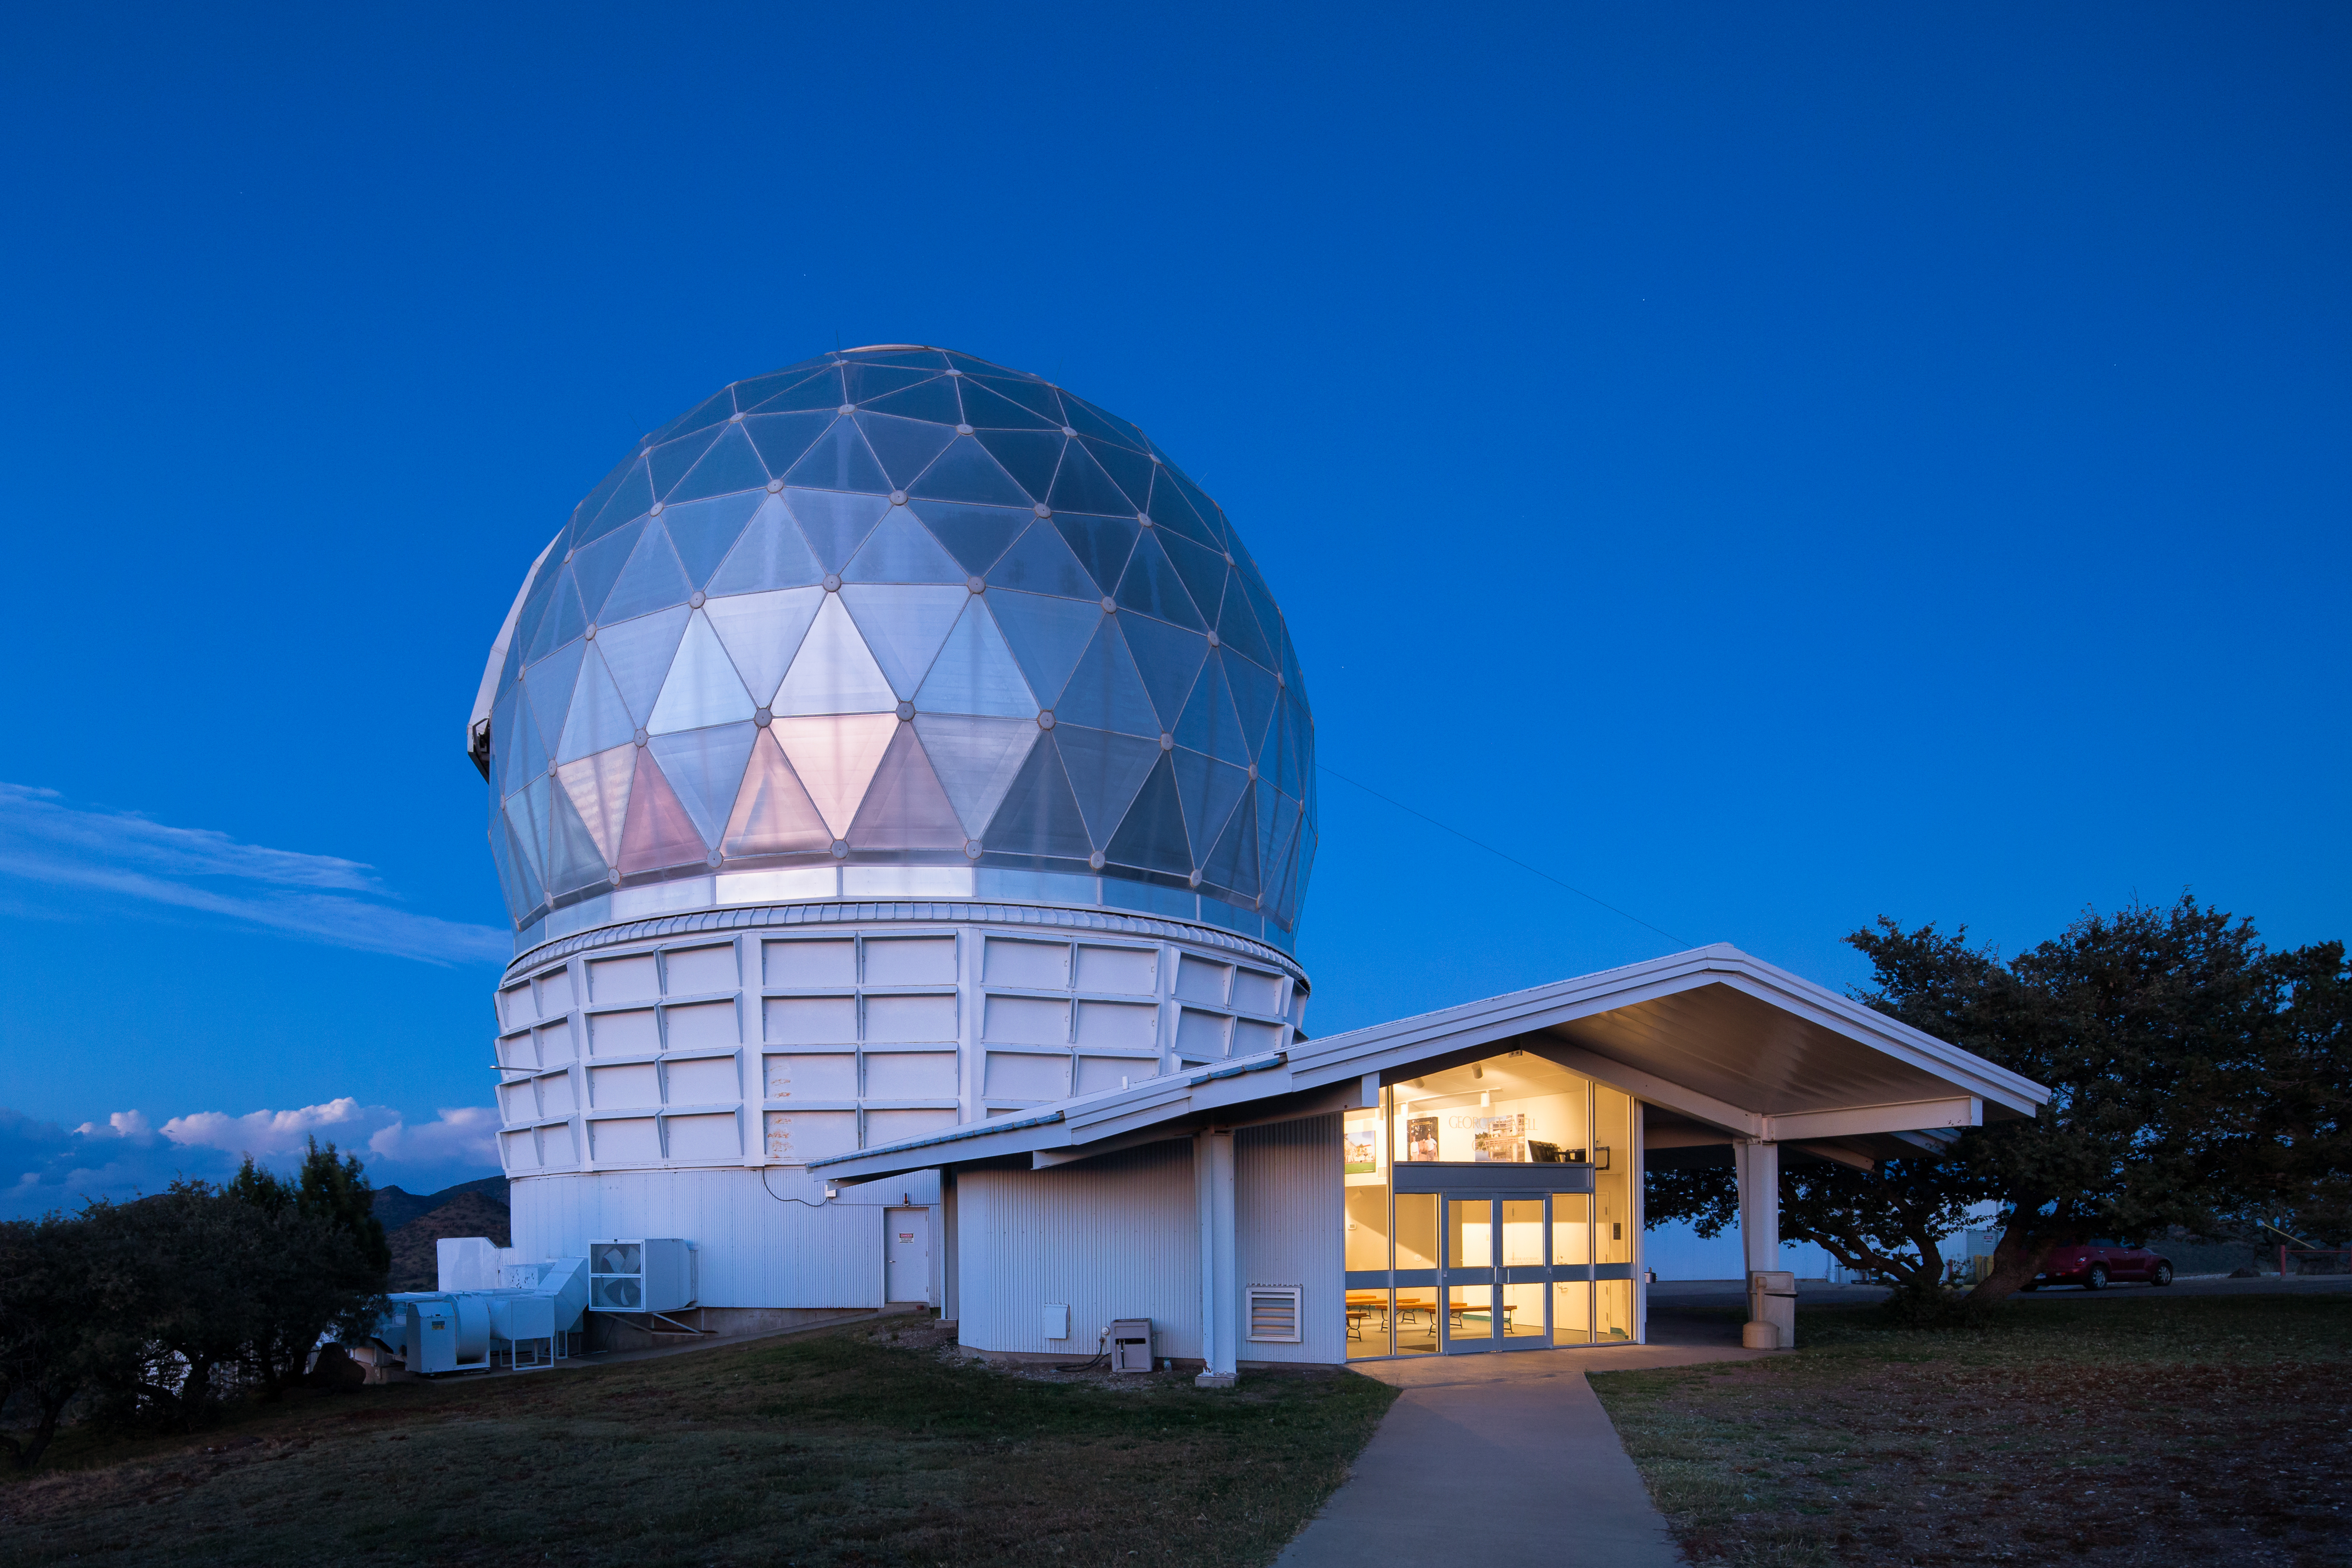 McDonald Observatory | Visitor information, teacher workshops, public